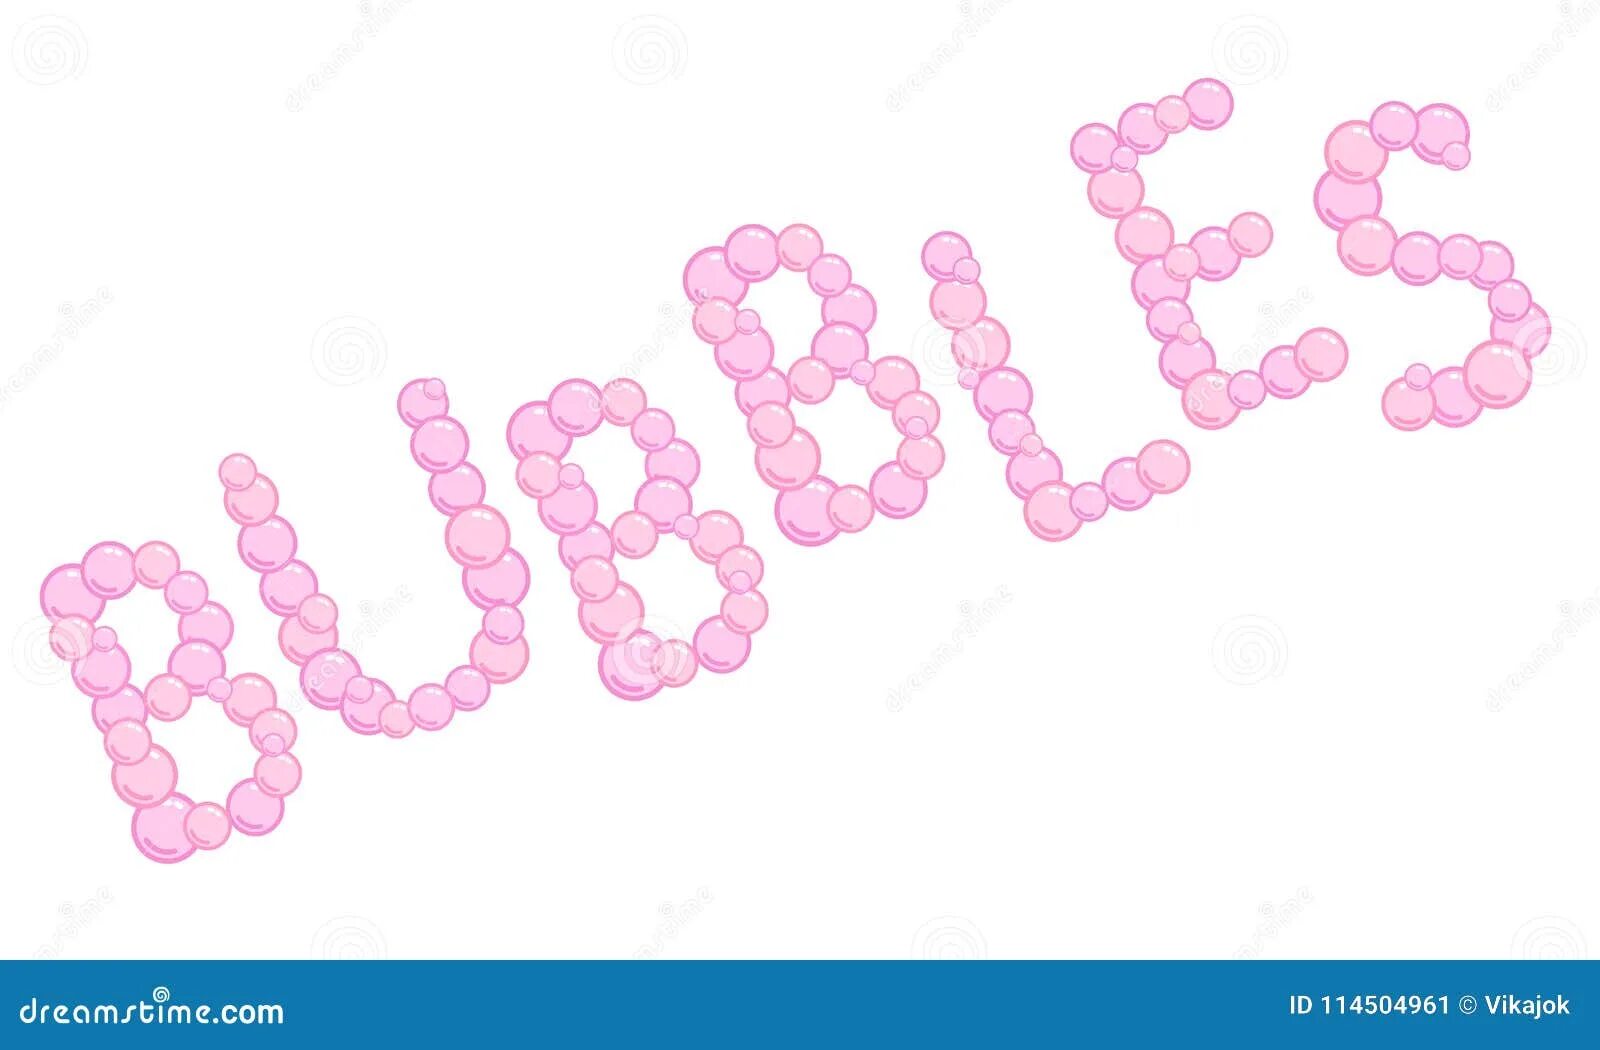 Soap Bubble логотип. Надпись из пузырьков рисунок. Пузыри для слов.